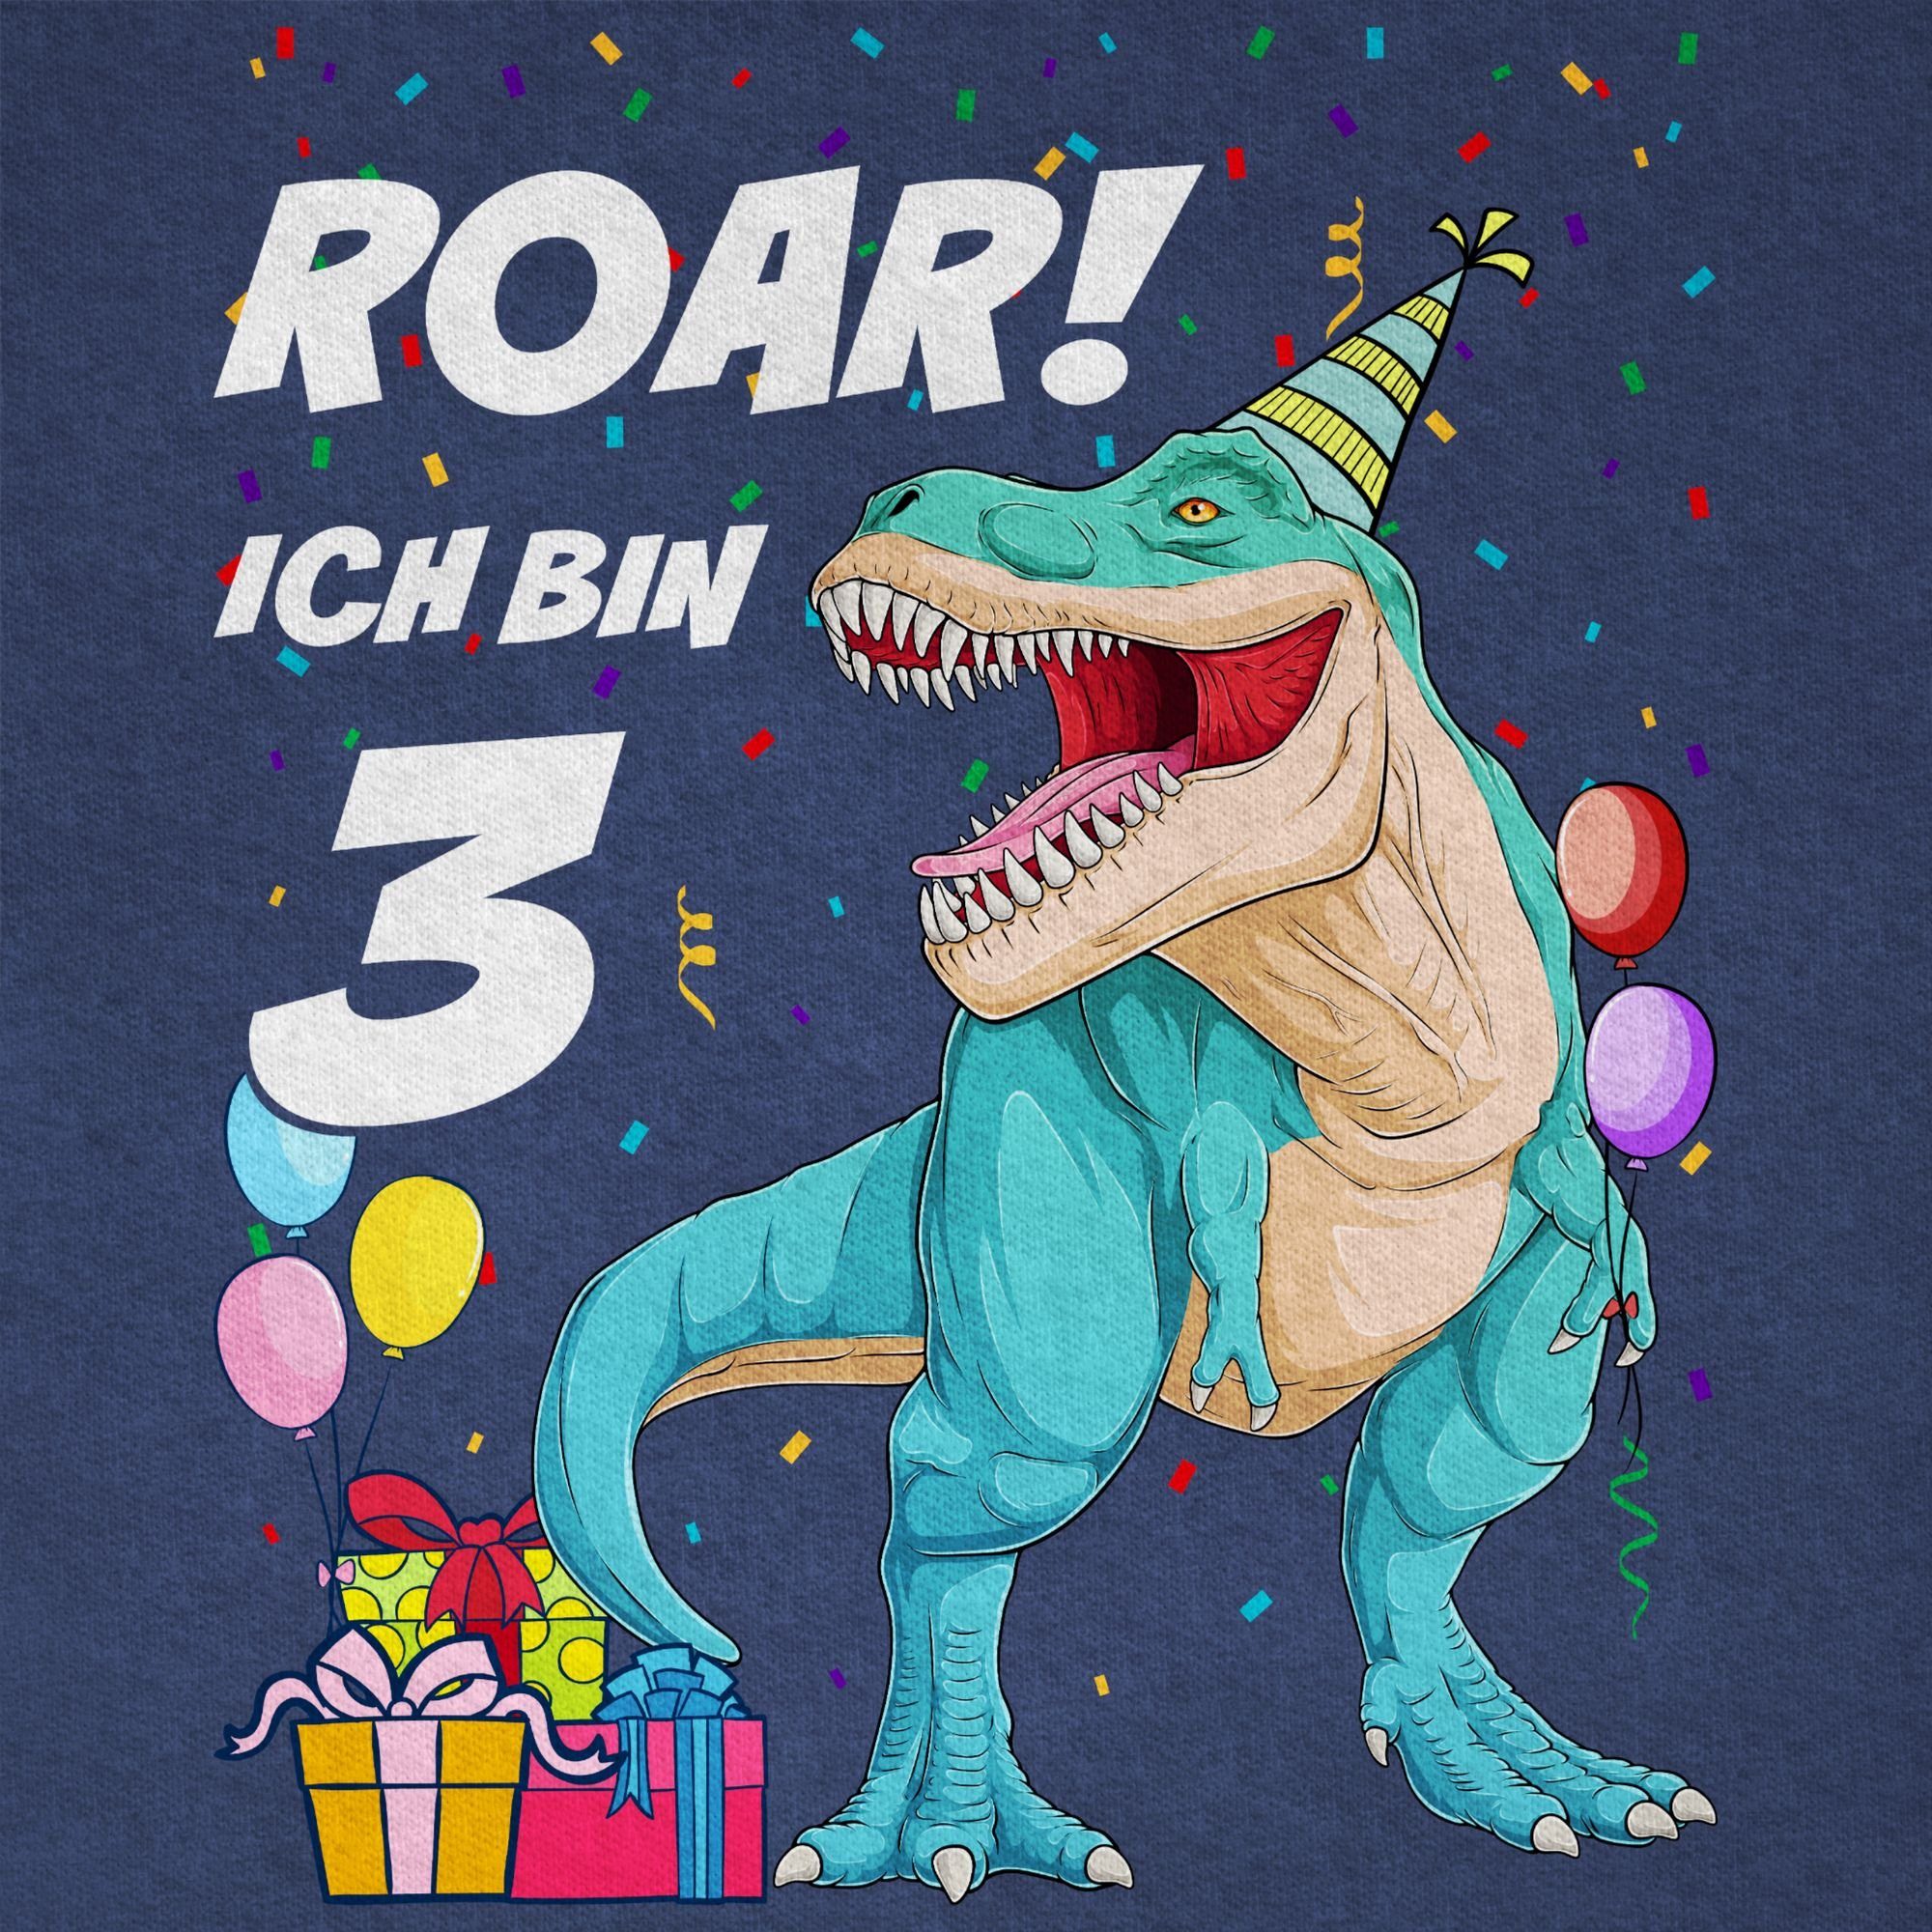 Meliert Dino Ich Dinosaurier 3. Shirtracer Geburtstag T-Rex 02 - 3 T-Shirt Dunkelblau Jahre bin